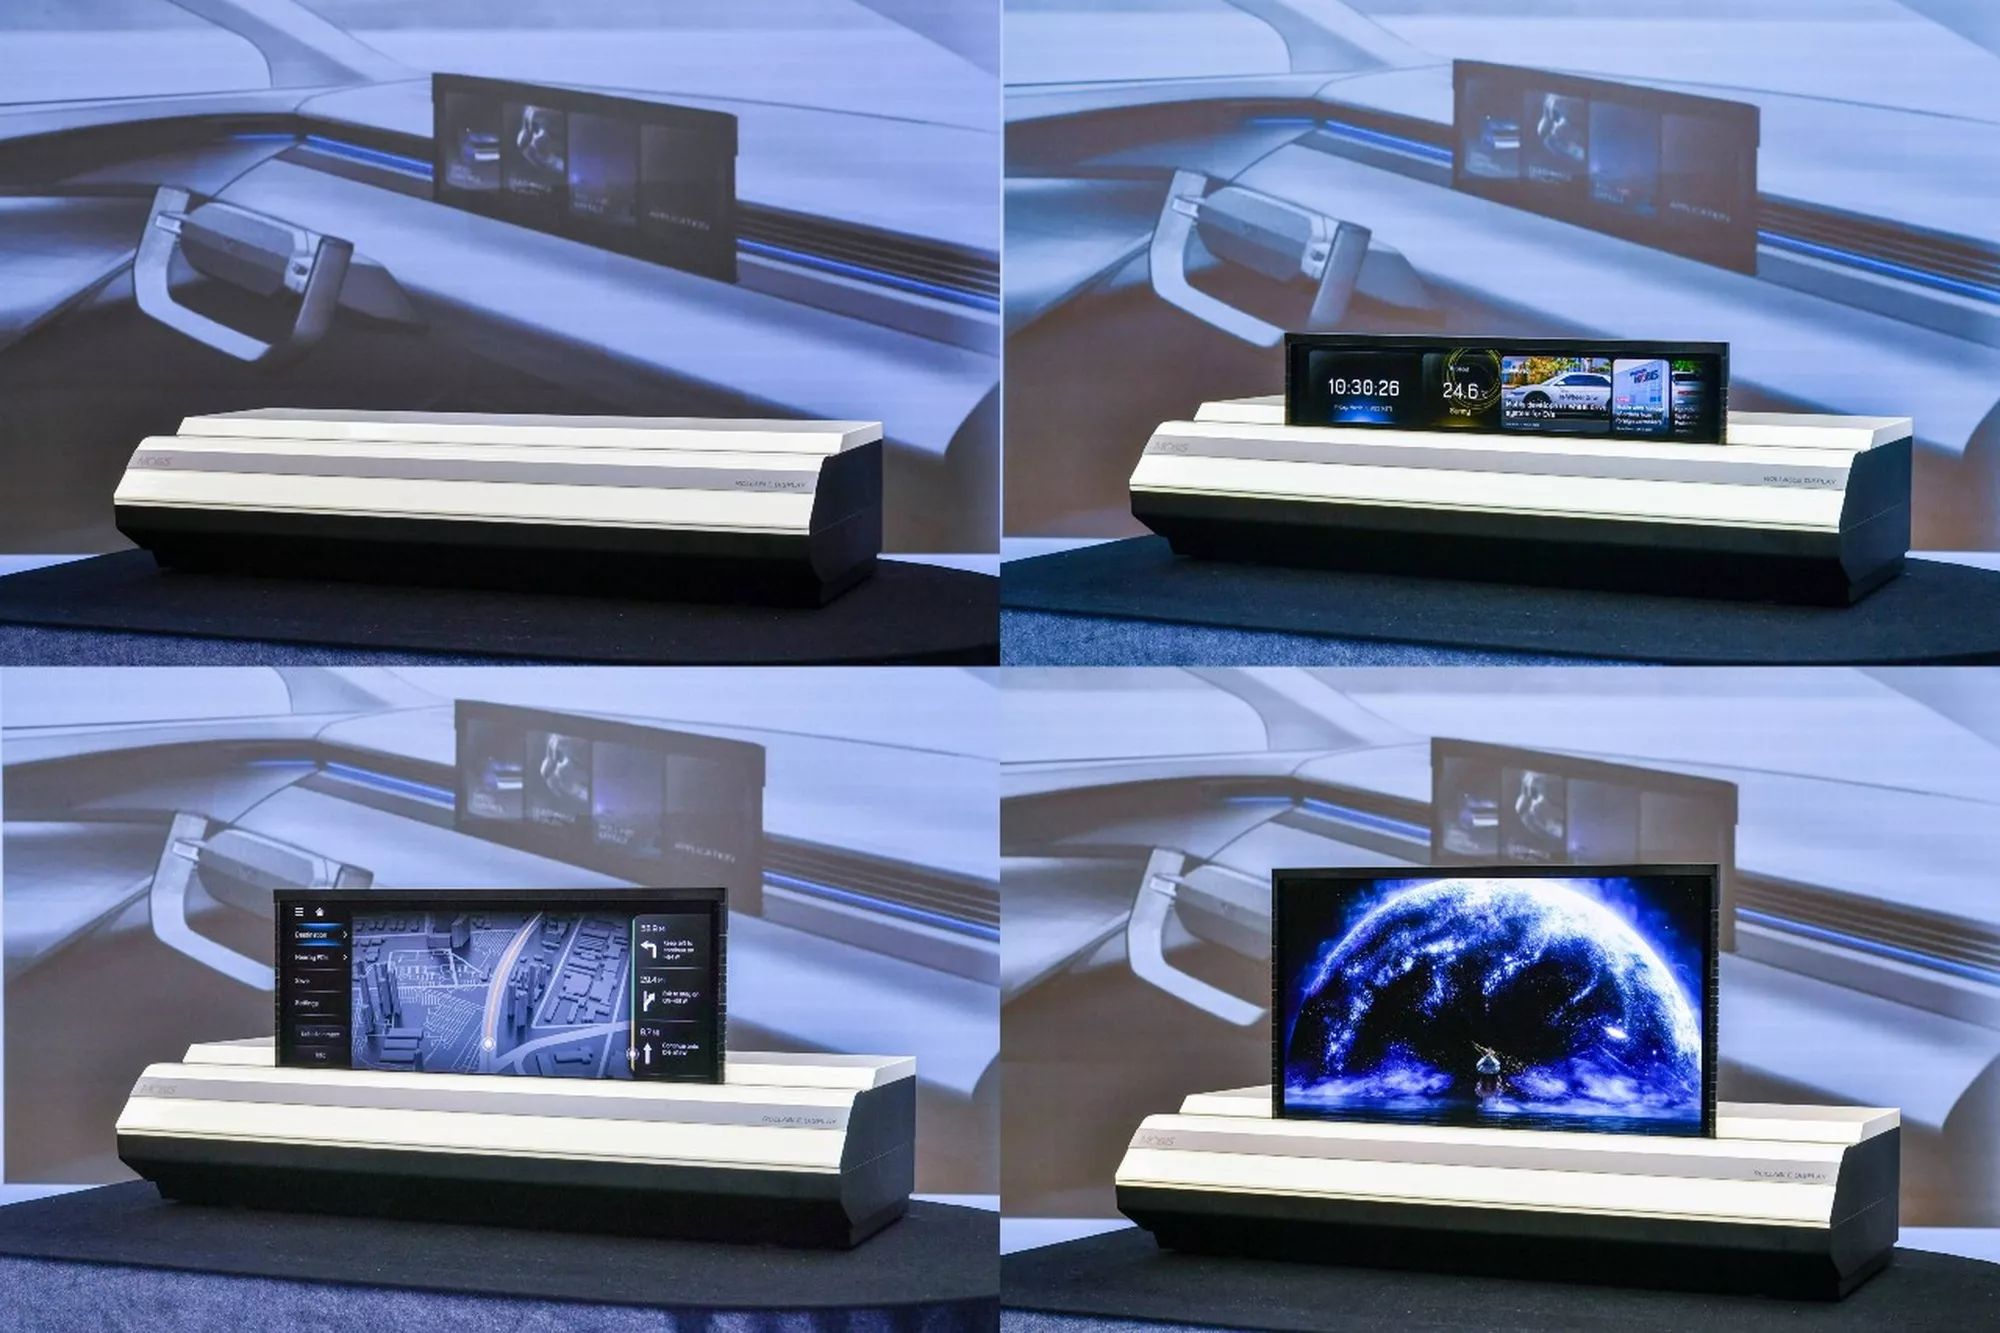 هيونداي تكشف عن شاشة ثورية جديدة يمكن طيها وإخفاؤها داخل لوحة القيادة 2